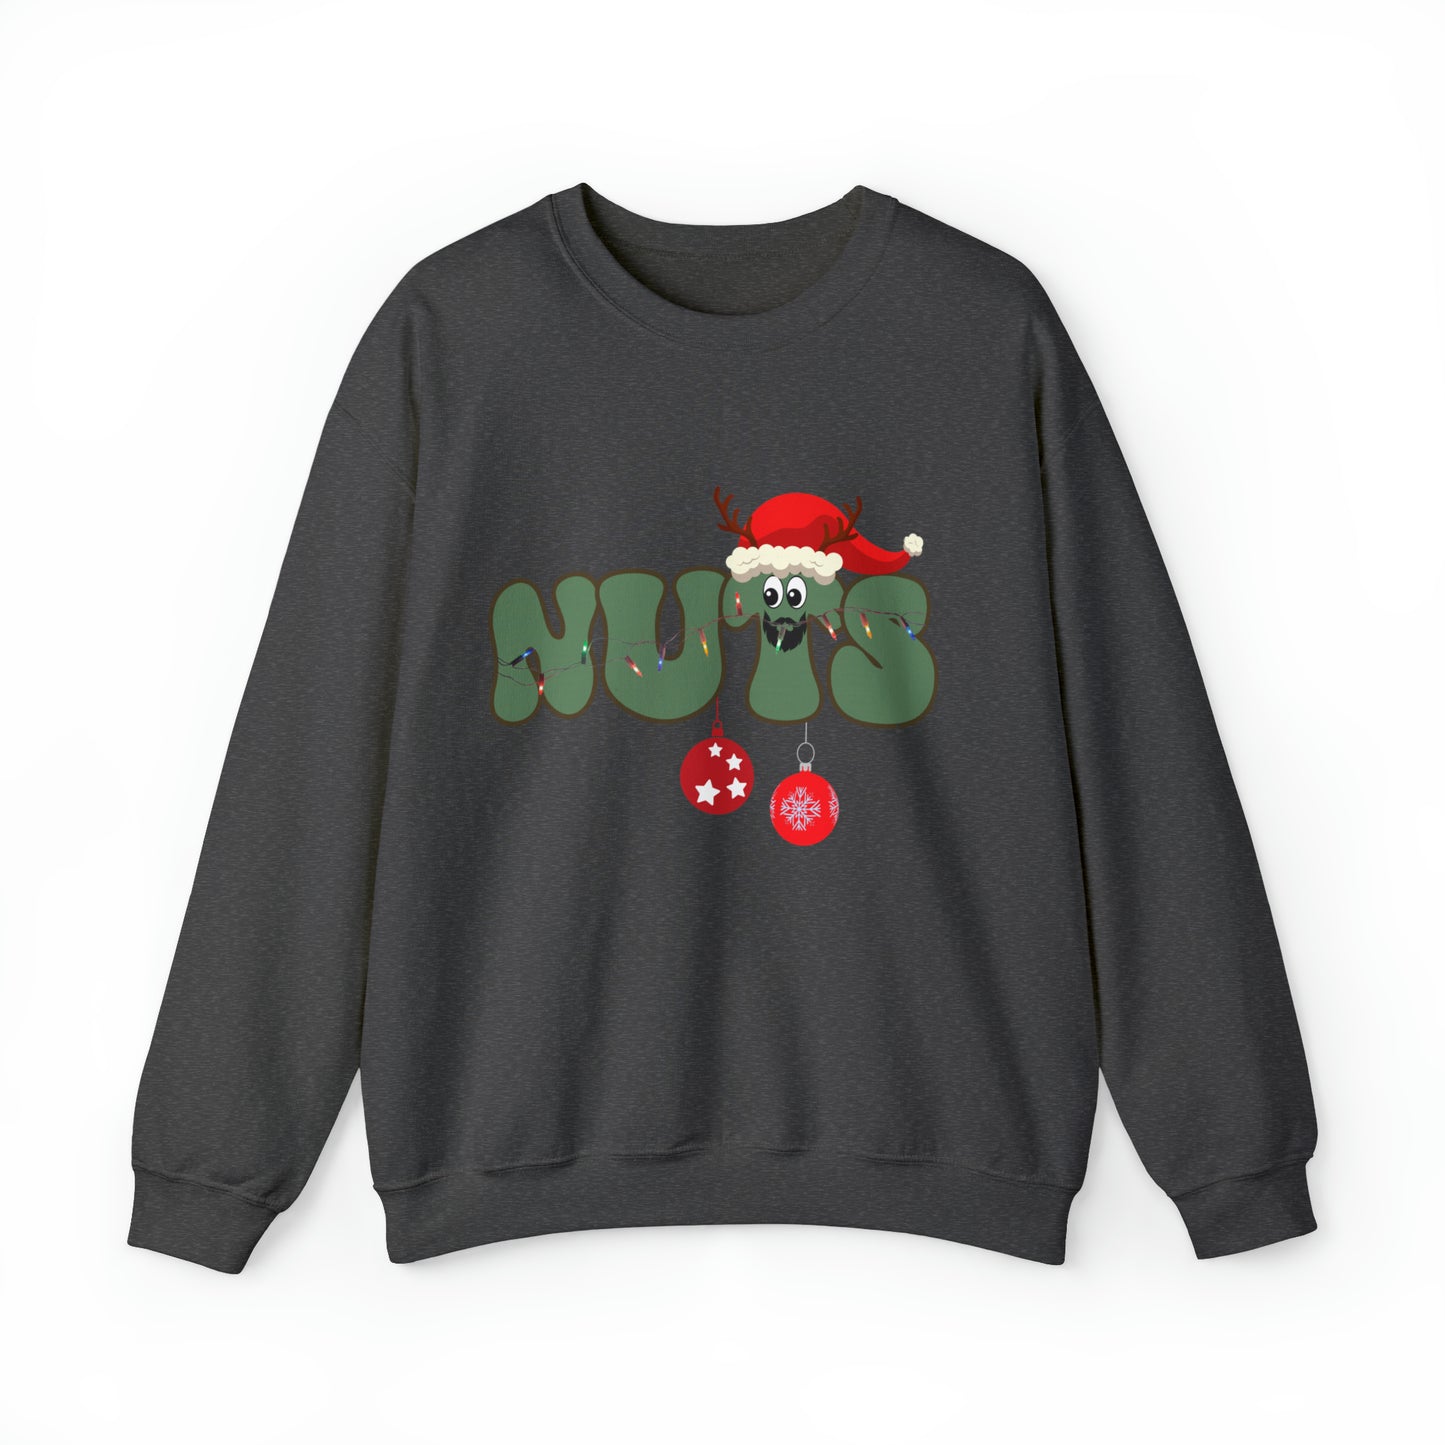 Couple Chest Nuts Crewneck Sweatshirt, Christmas Holiday Sweatshirt, Christmas Gift for Couples, Funny Matching Christmas Sweatshirt, S949